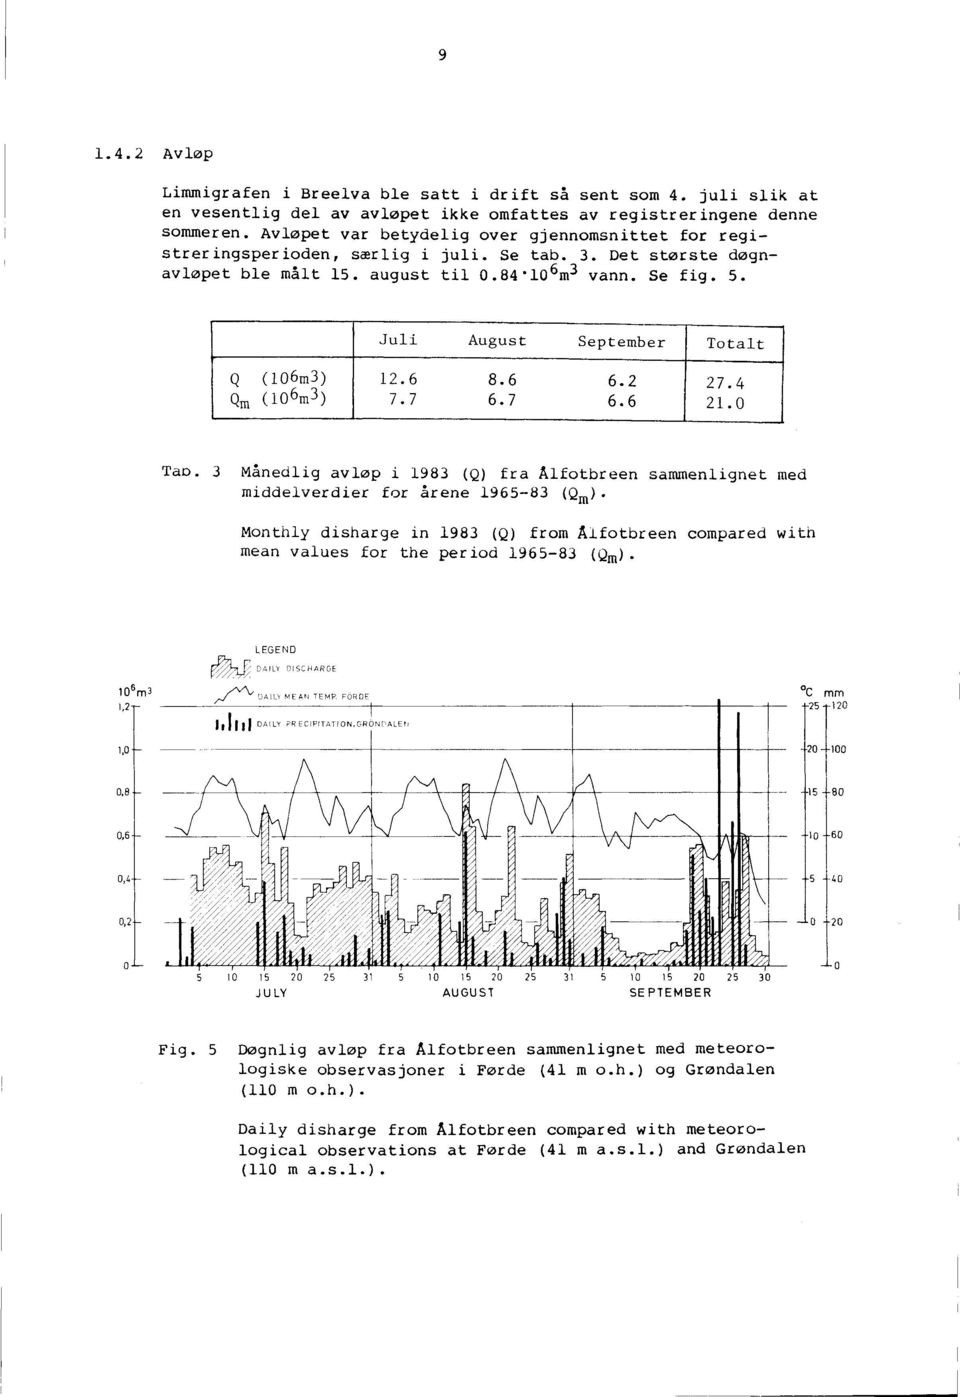 Juli August September Totalt Q(106m3) 12.6 8.6 6.2 27.4 Qm (106m3) 7.7 6.7 6.6 21.0 Tao. 3 Månedlig avløp i 1983 (Q) fra Ålfotbreen sammenlignet med middelverdier for årene 1965-83 (Qm).